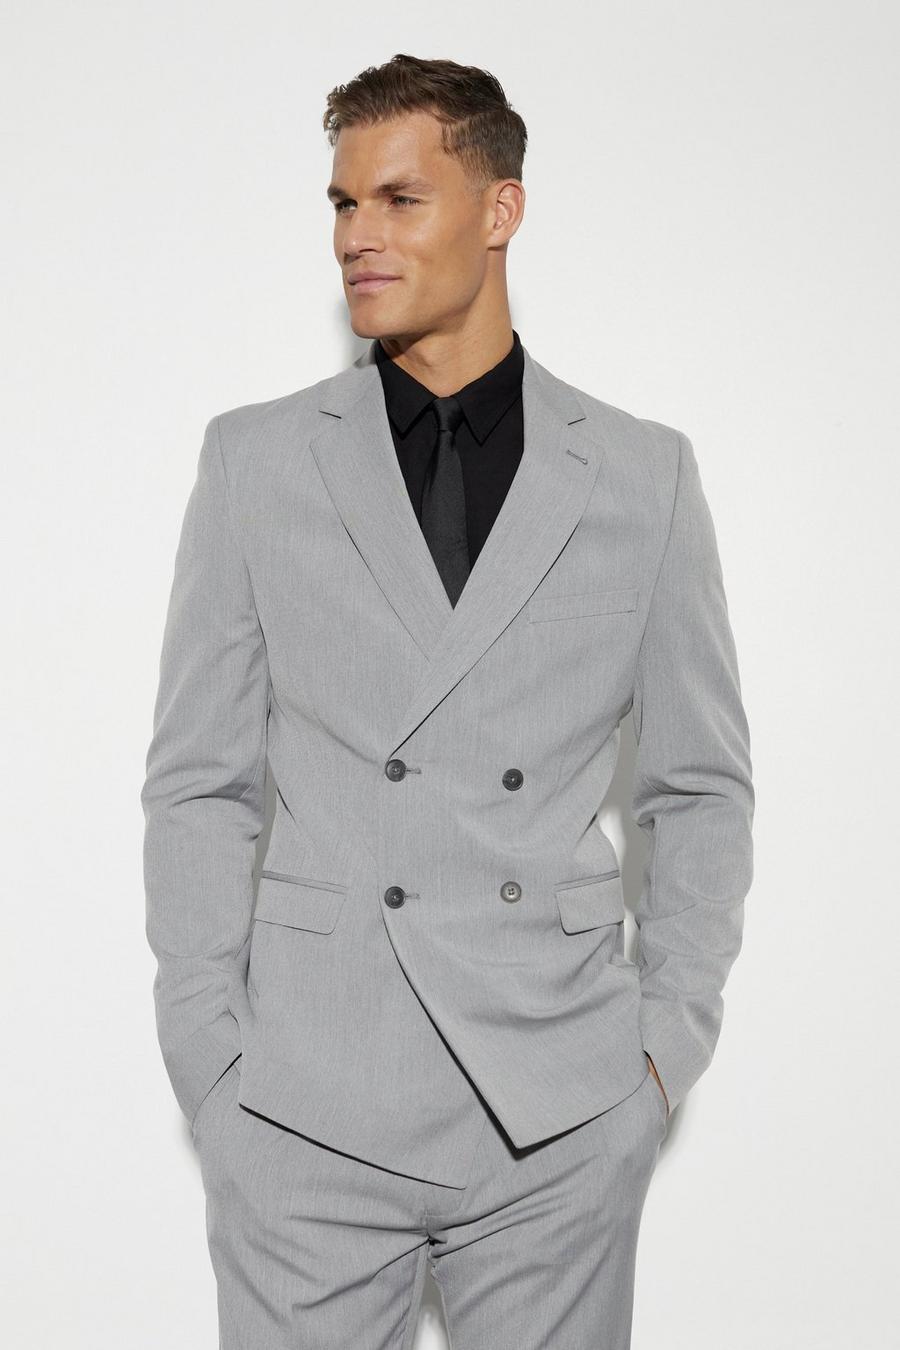 אפור ז'קט חליפה סקיני עם דשים כפולים לגברים גבוהים image number 1